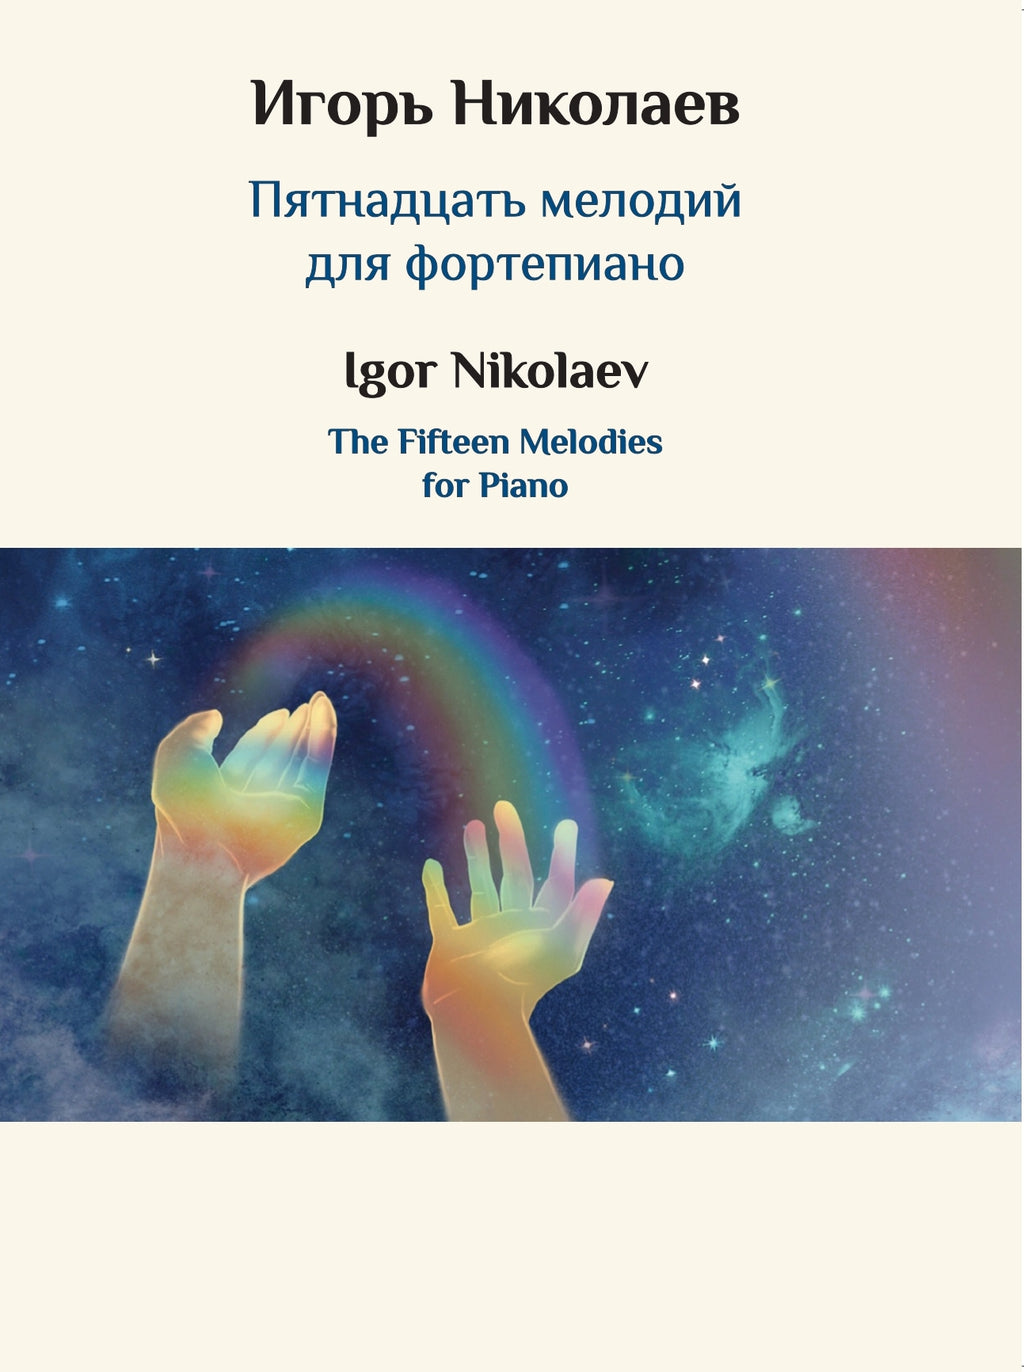 Сборник Игоря Николаева уже в продаже